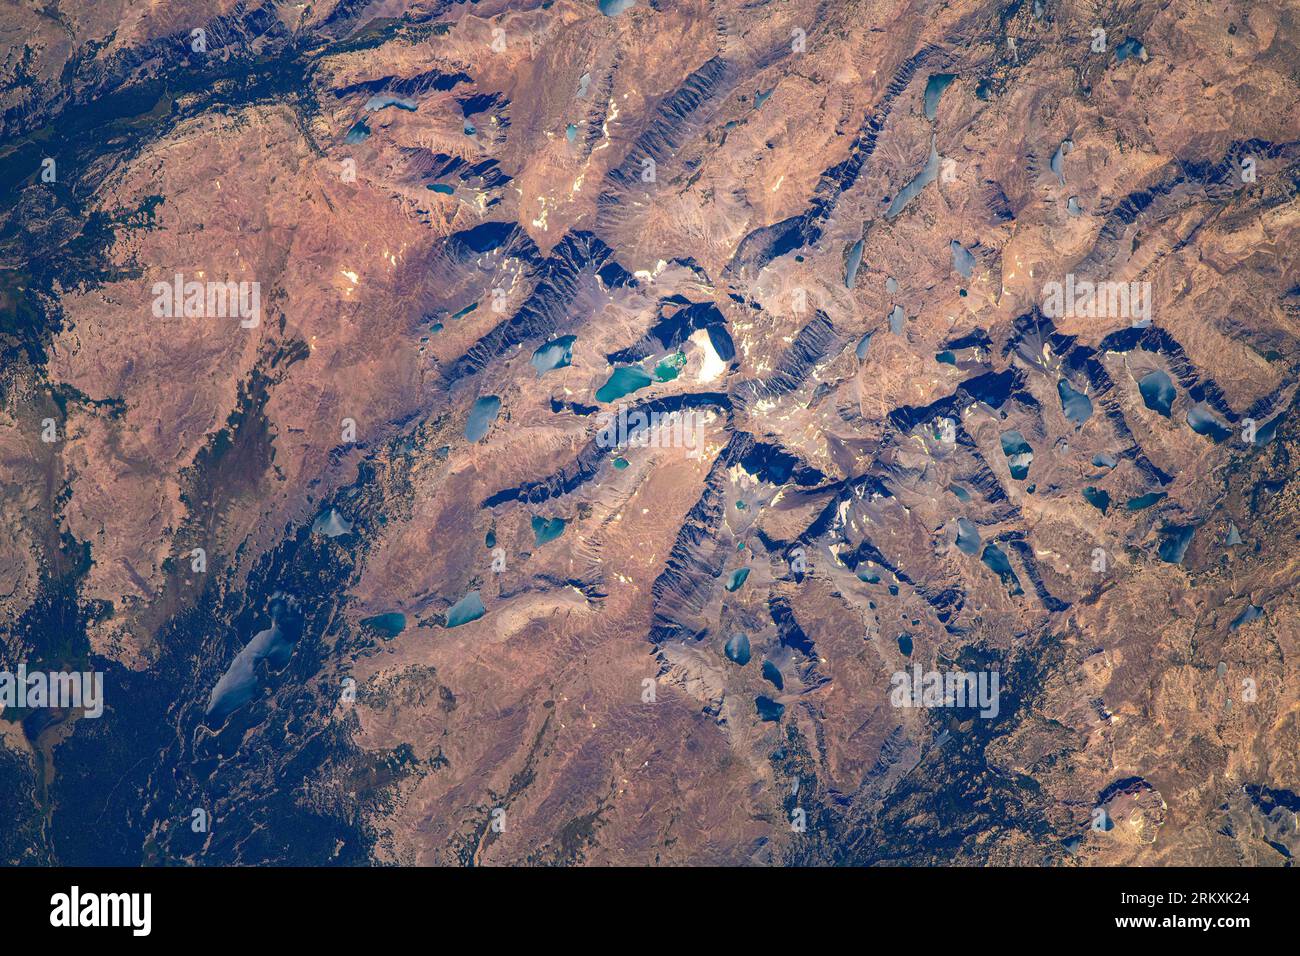 Fantastico terreno nello stato del Montana, negli Stati Uniti. Miglioramento digitale di un'immagine da parte della NASA. Foto Stock